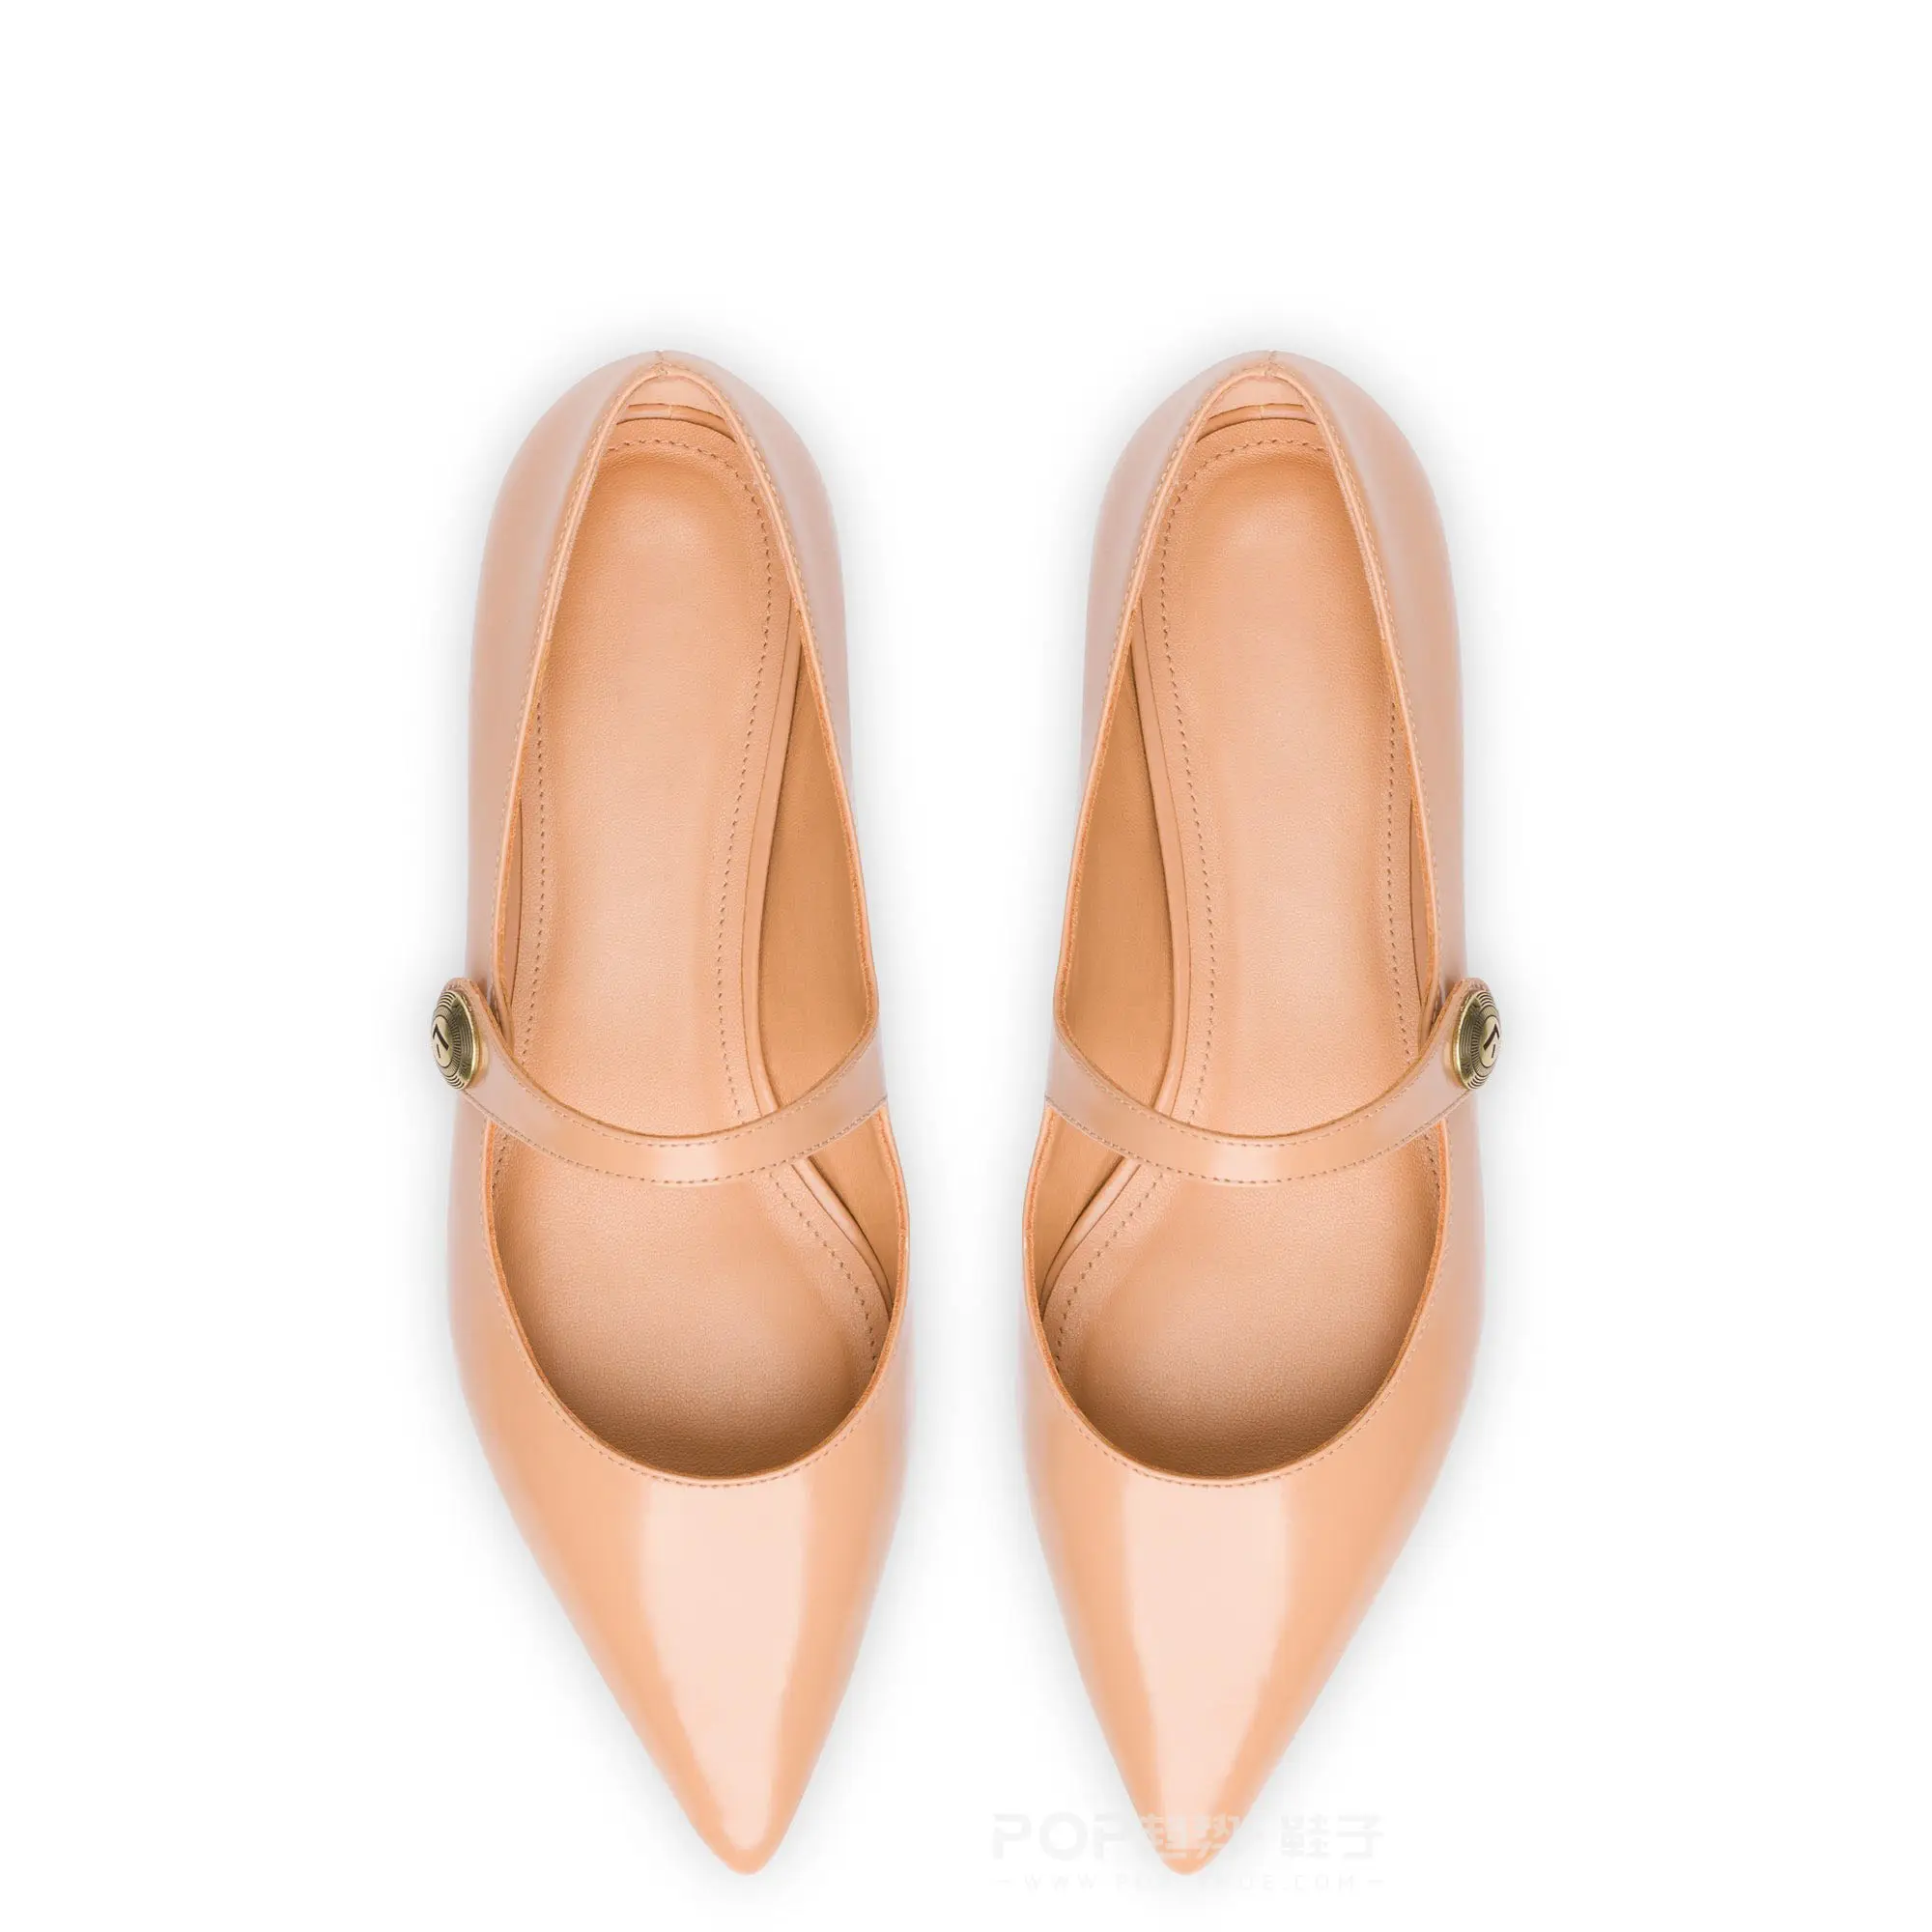 Zapatos de mujer planos superiores de cuero de lujo de alta calidad estilo Mary Jane puntiagudos elegantes nuevos diseños personalizados